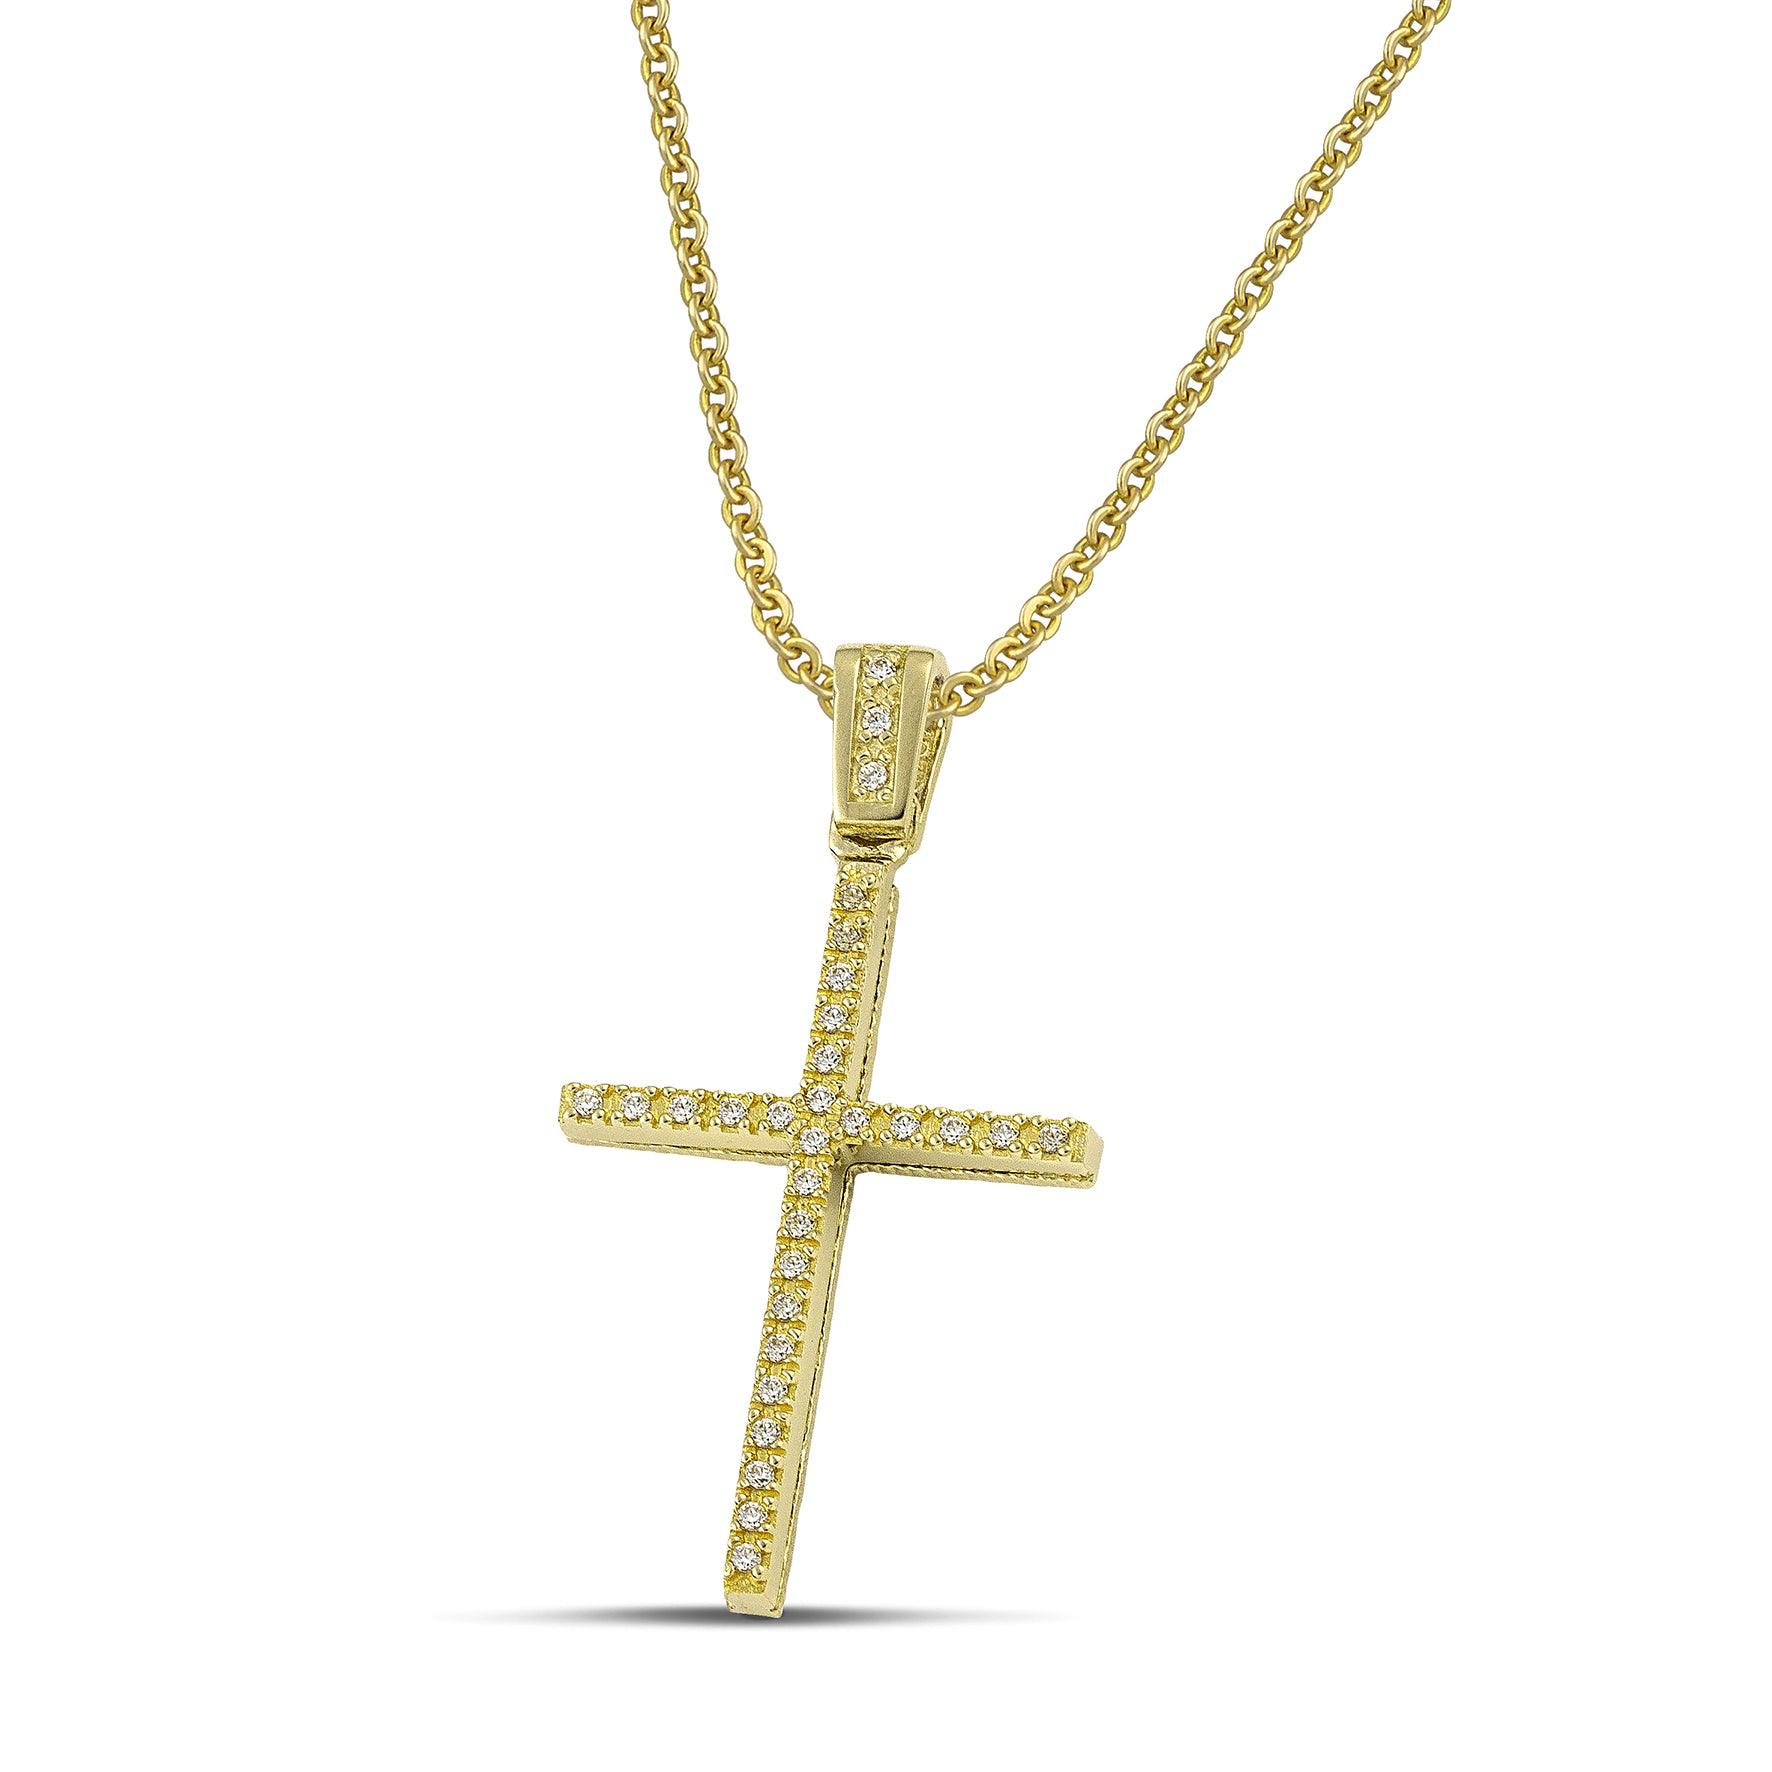 Γυναικείος χρυσός σταυρός για βάπτιση με ζιργκόν, με χρυσή αλυσίδα κρίκο κρίκο.